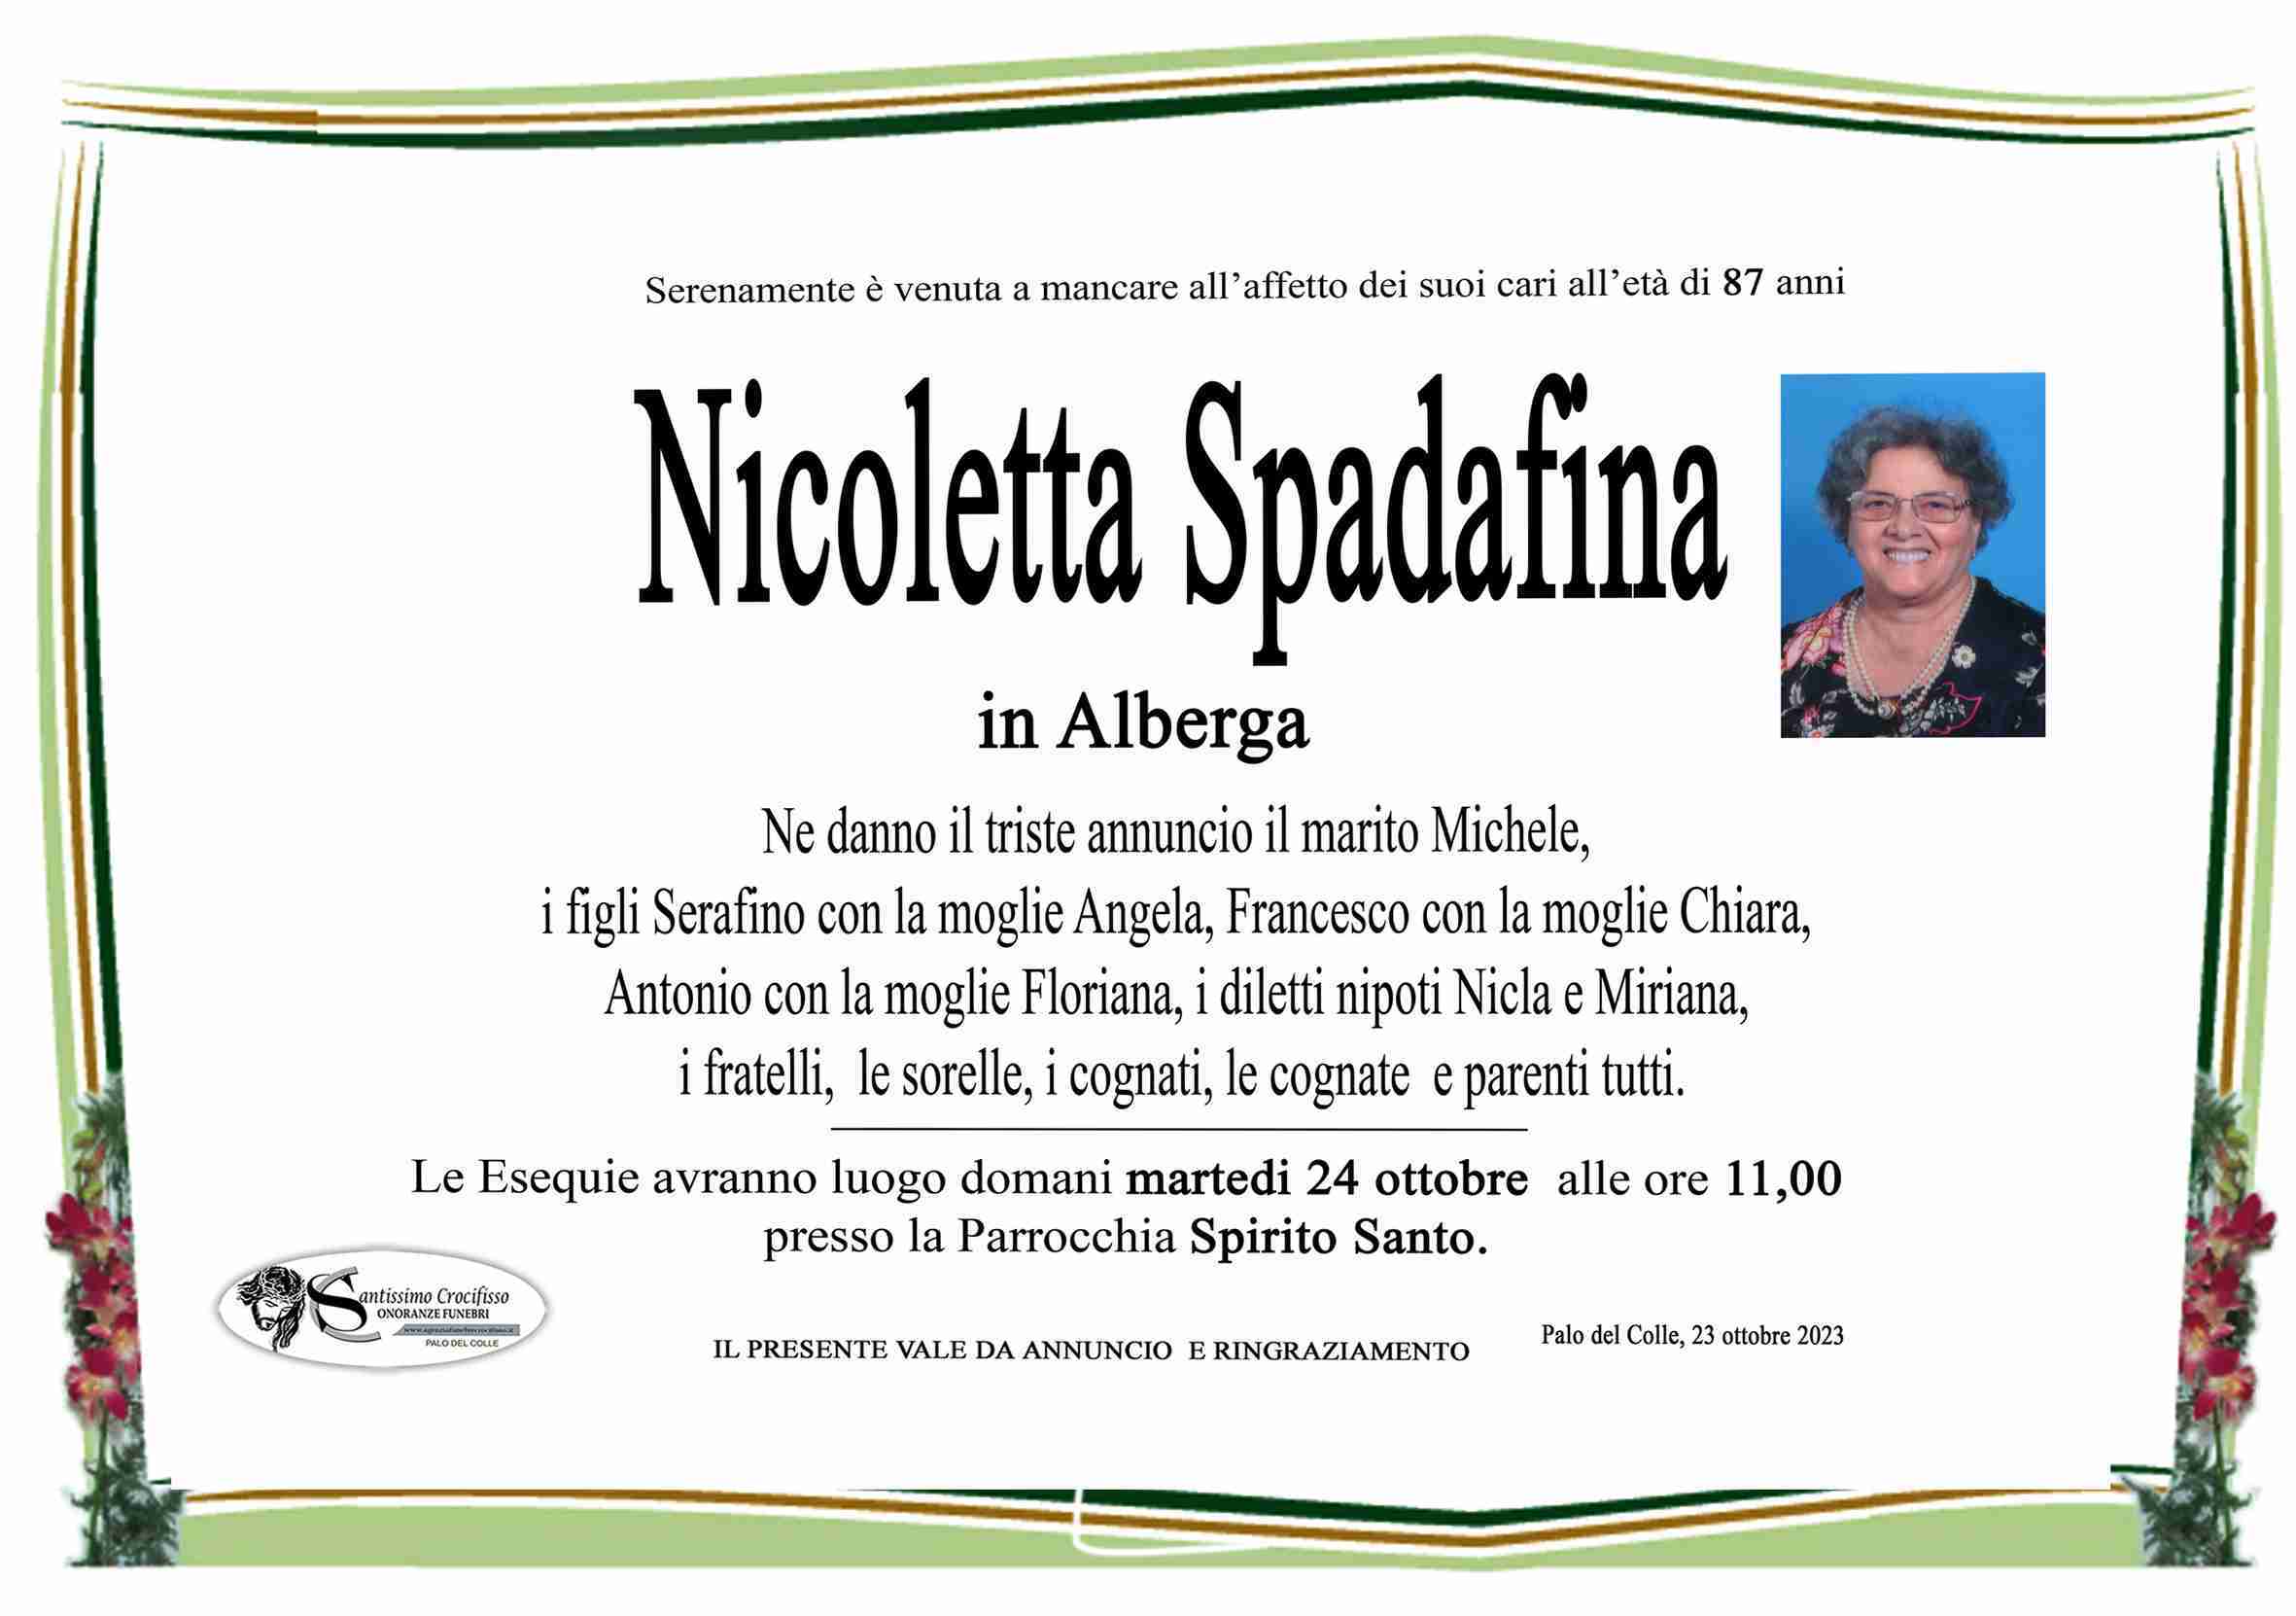 Nicoletta Spadafina